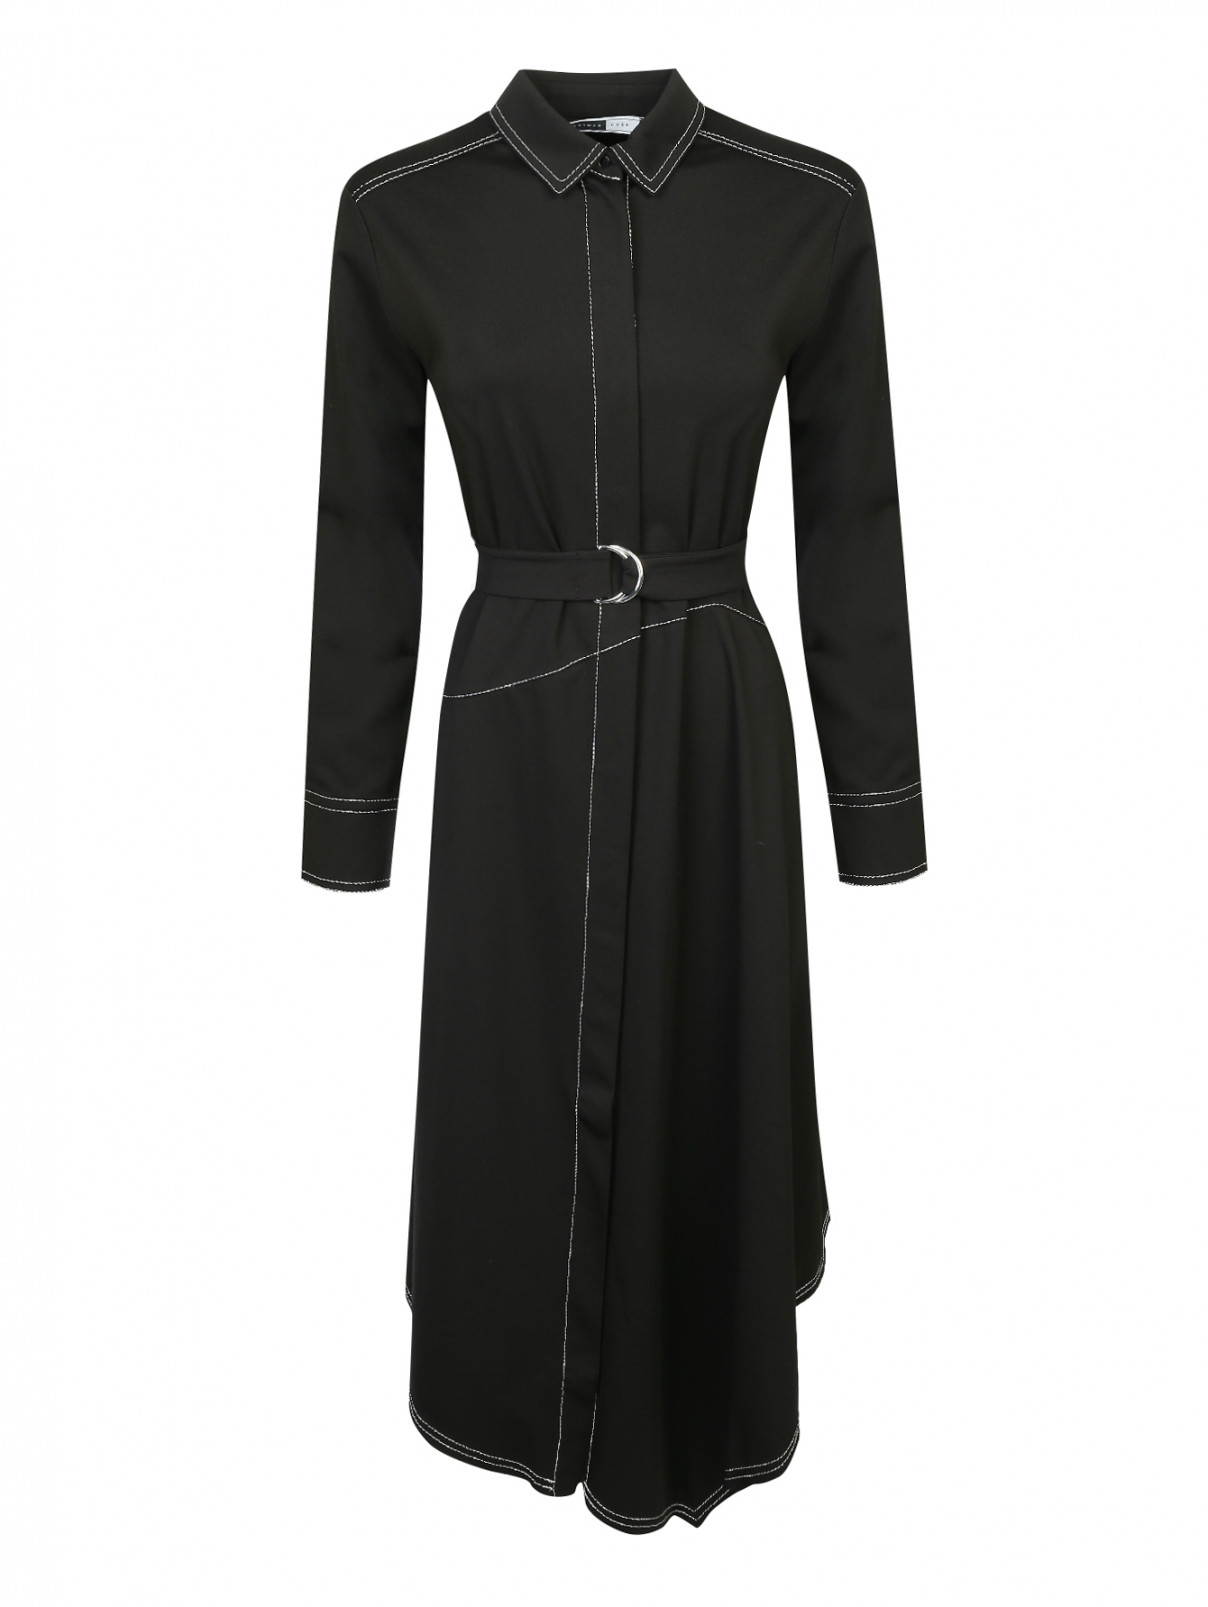 Платье-рубашка, из хлопка, с контрастной строчкой Sportmax  –  Общий вид  – Цвет:  Черный